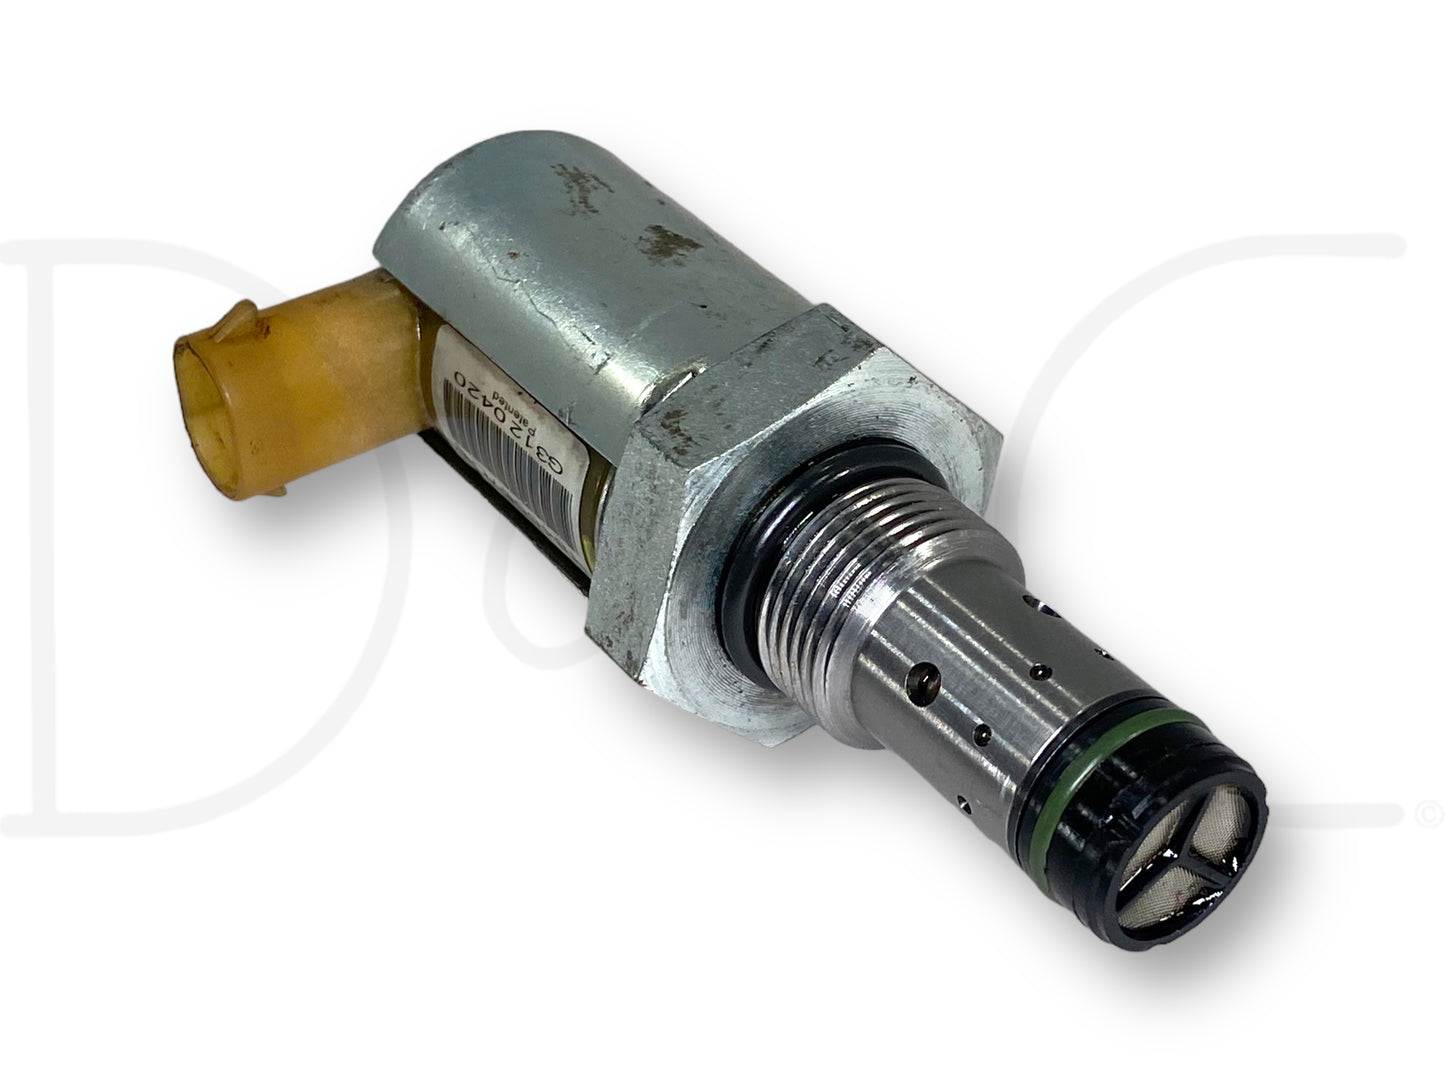 03-07 Ford F350 6.0 6.0L Diesel IPR Valve Injector Pressure Regulator 1846057C1